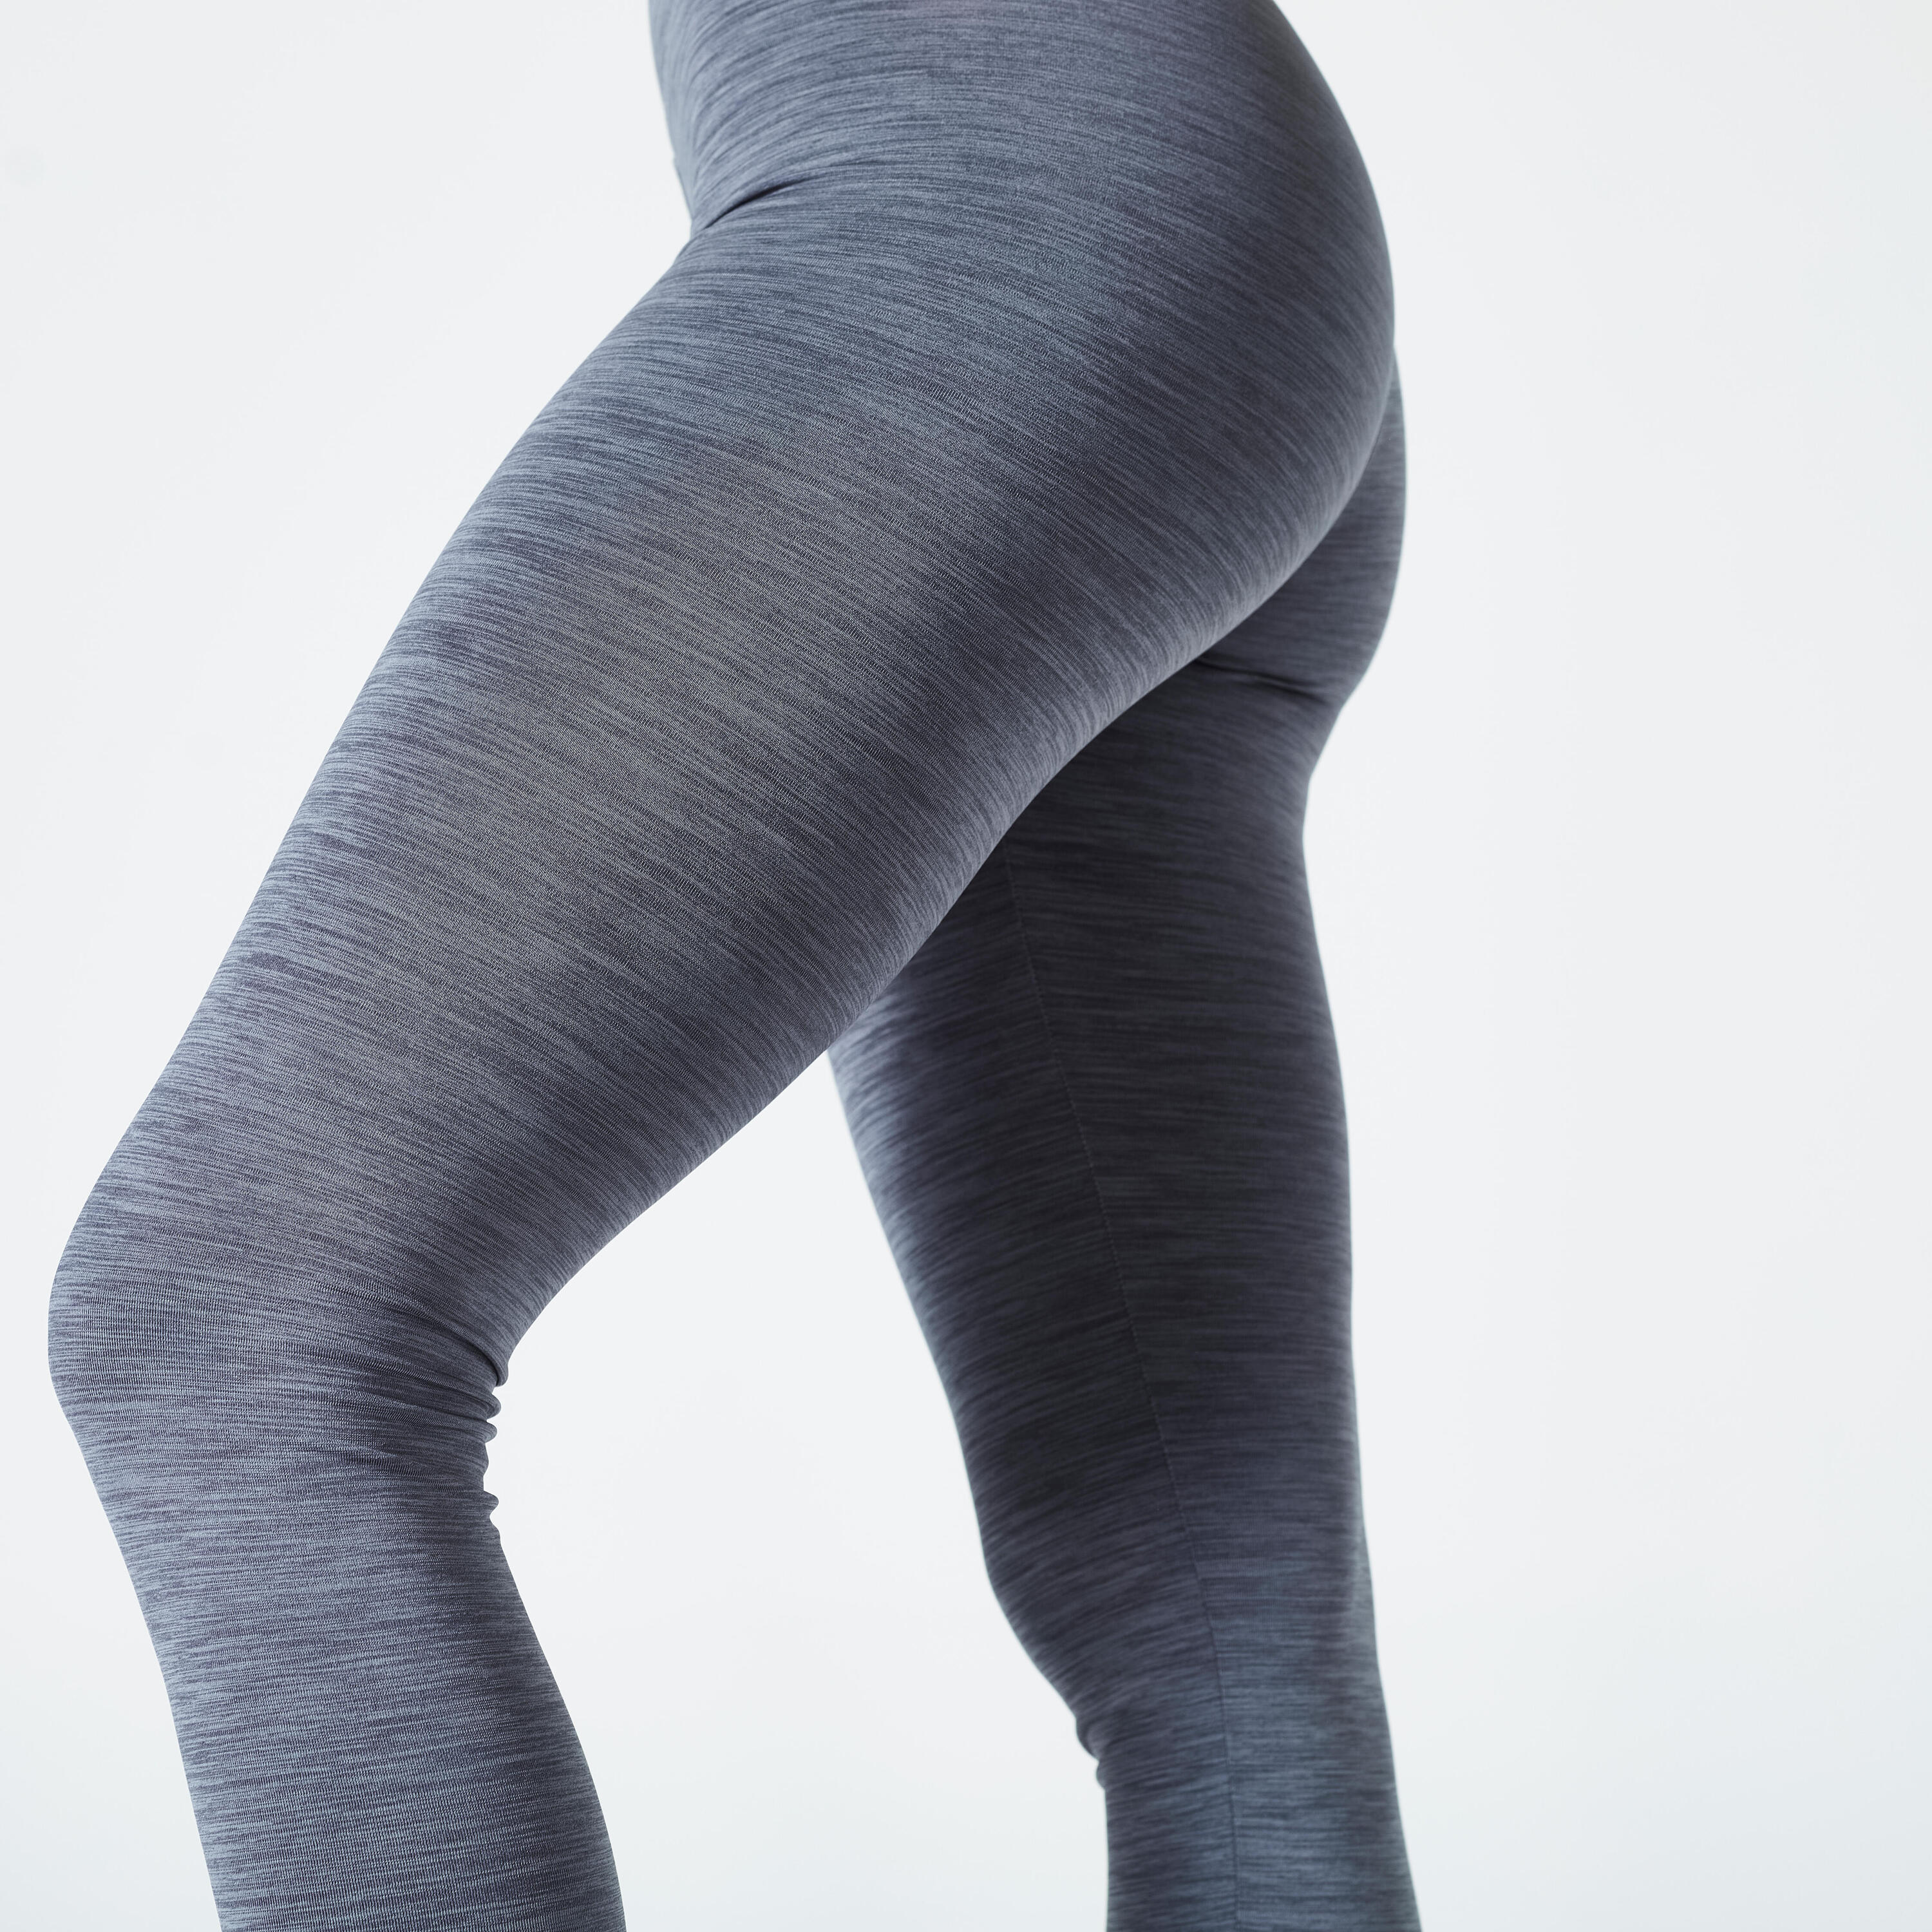 Women's High-Waisted Cardio Fitness Leggings - Mottled Grey 4/5